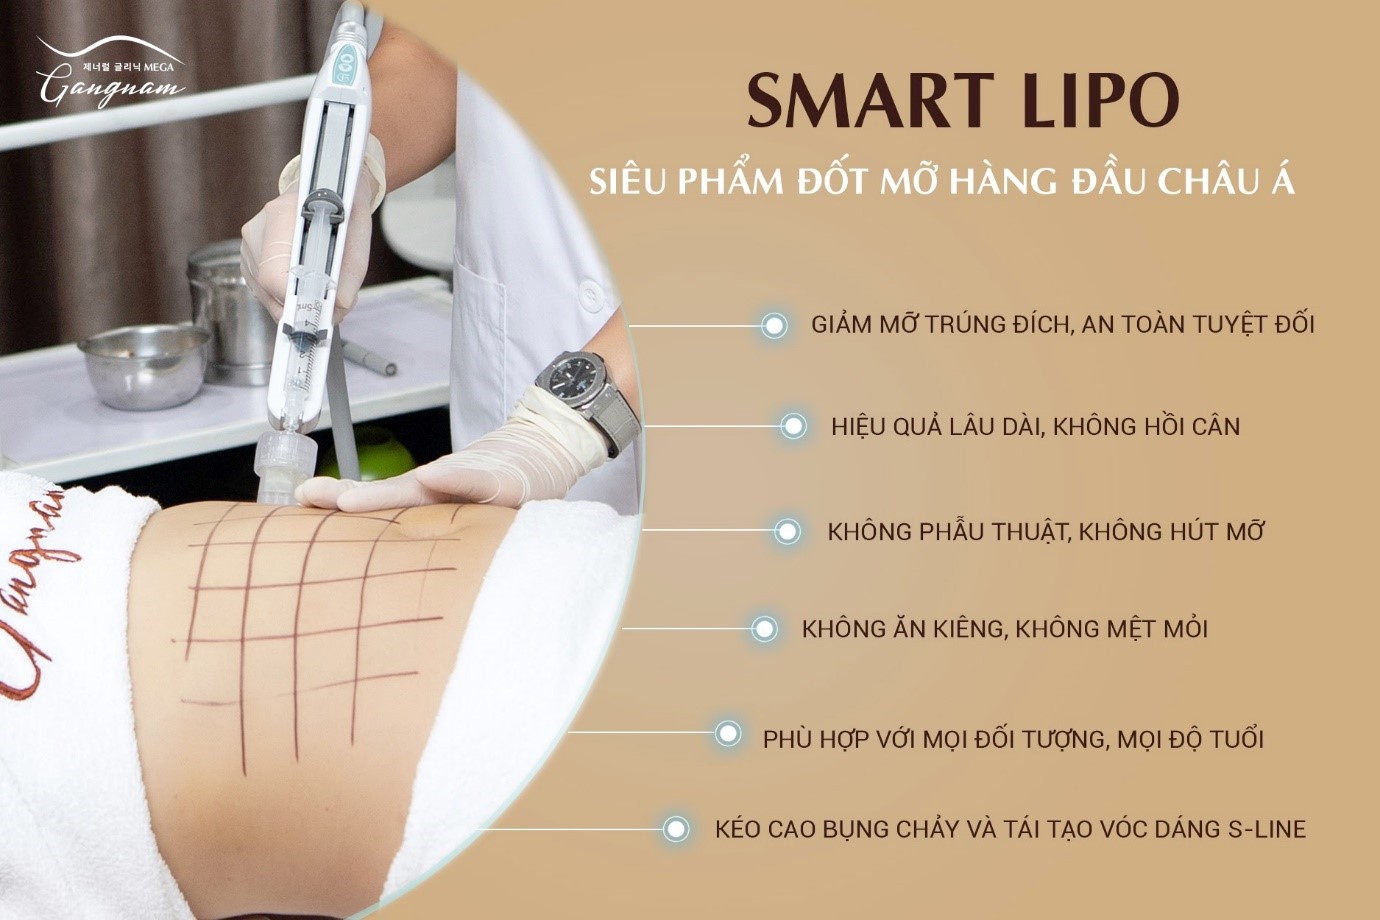 Smart Lipo là giải pháp an toàn cho việc giảm mỡ toàn thân, bao gồm cả vùng mỡ mặt 